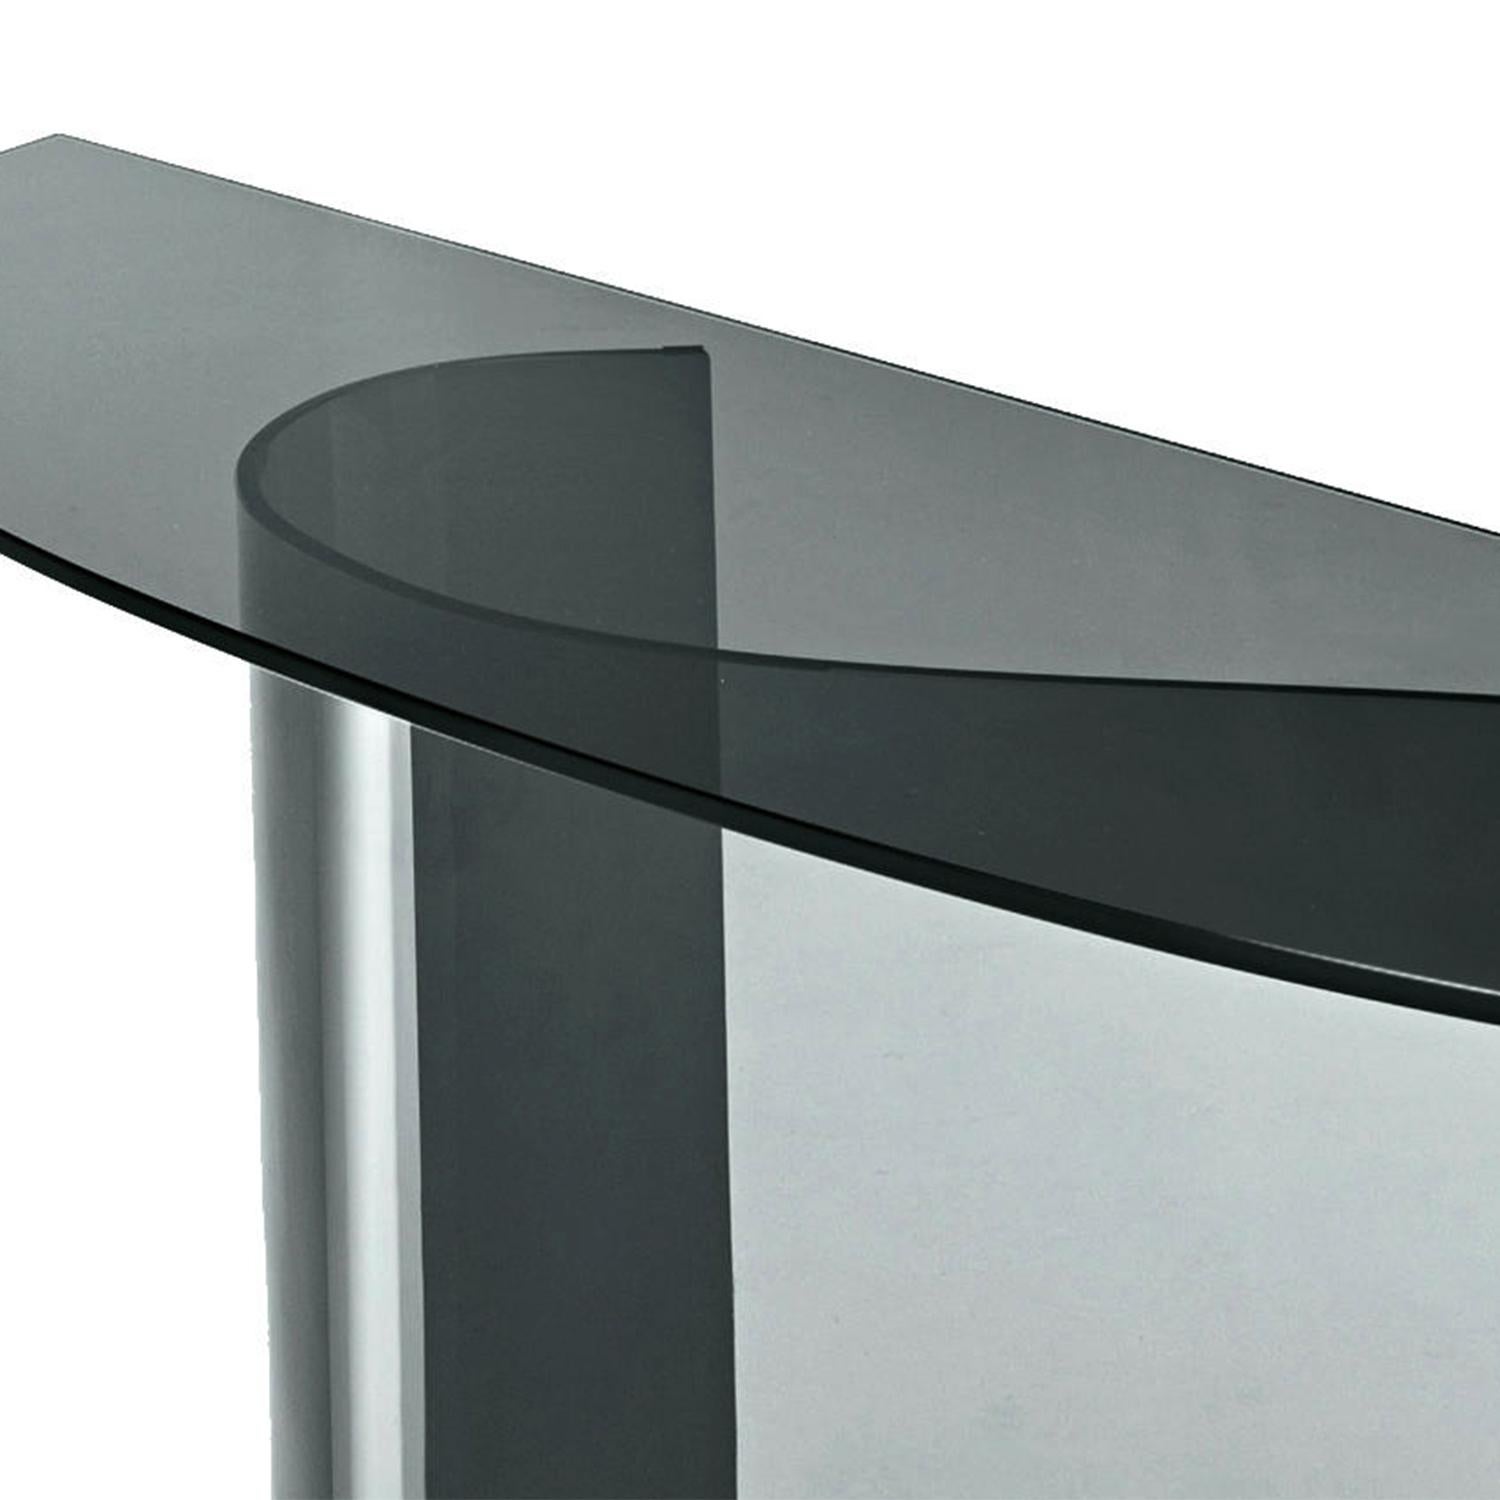 Table console incurvée baroco avec plateau en verre trempé, 
10 mm d'épaisseur, en finition fumée. Avec un verre subtilement incurvé 
base, 10 mm d'épaisseur. Disponible également en finition verre bronze
sur demande.